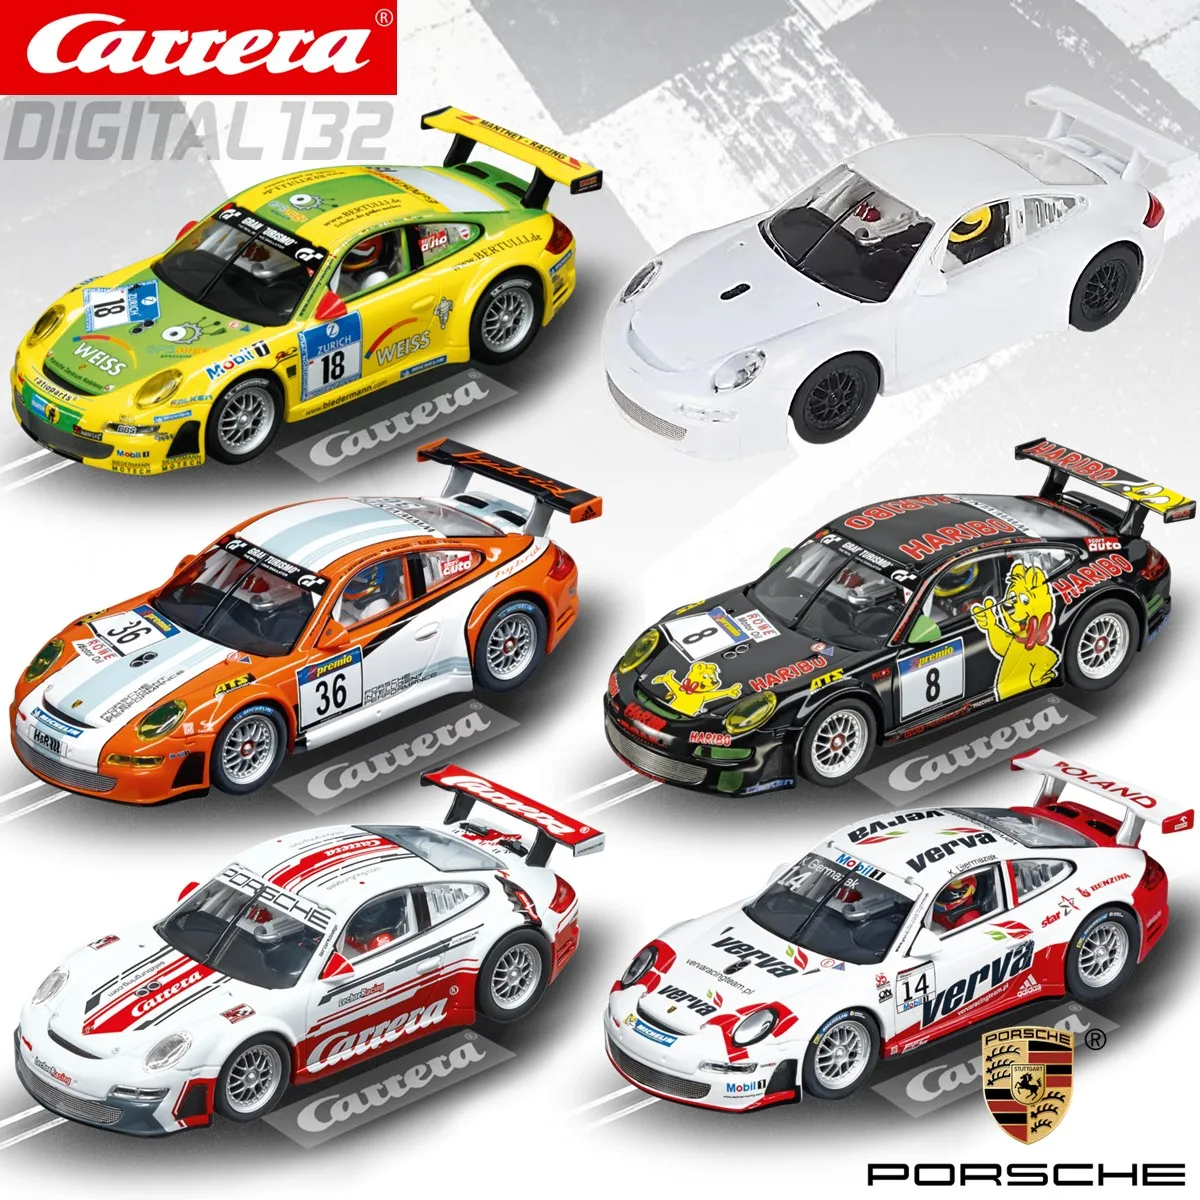 Carrera Digital 124 Porsche 911 RSR, 23949